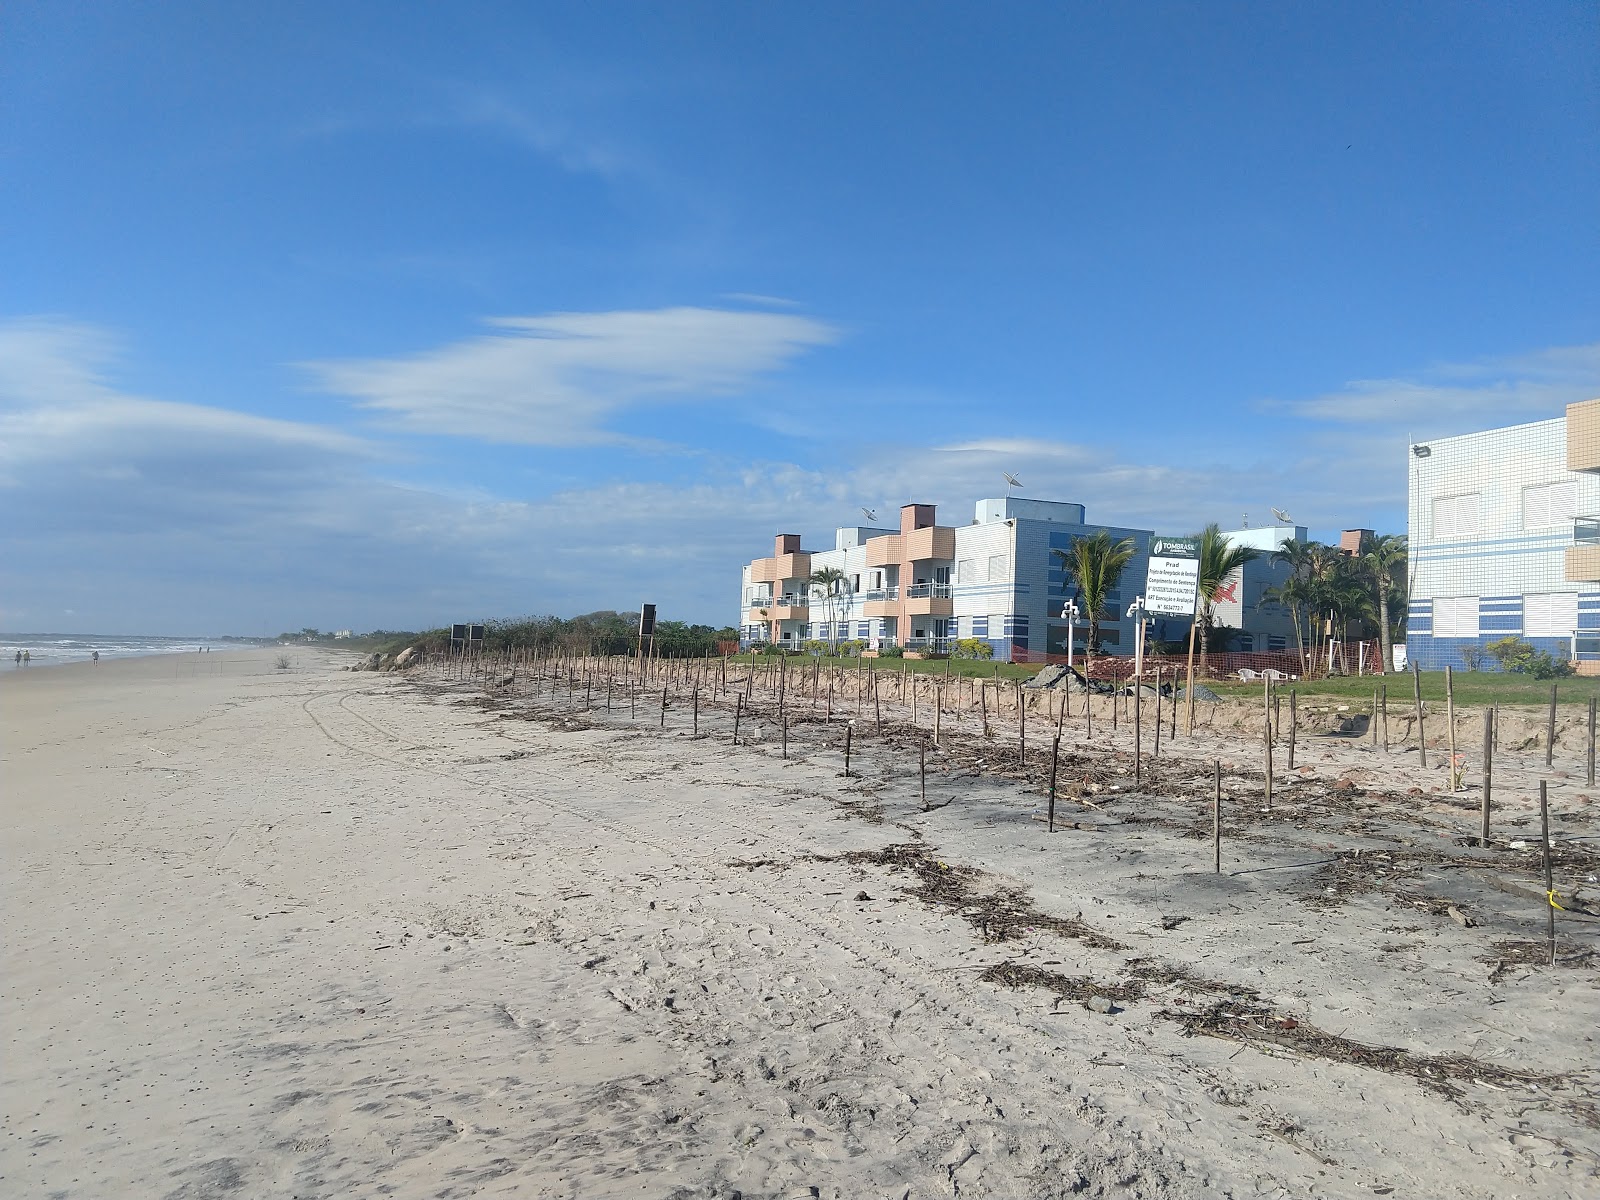 Zdjęcie Plaża Pelzi - popularne miejsce wśród znawców relaksu